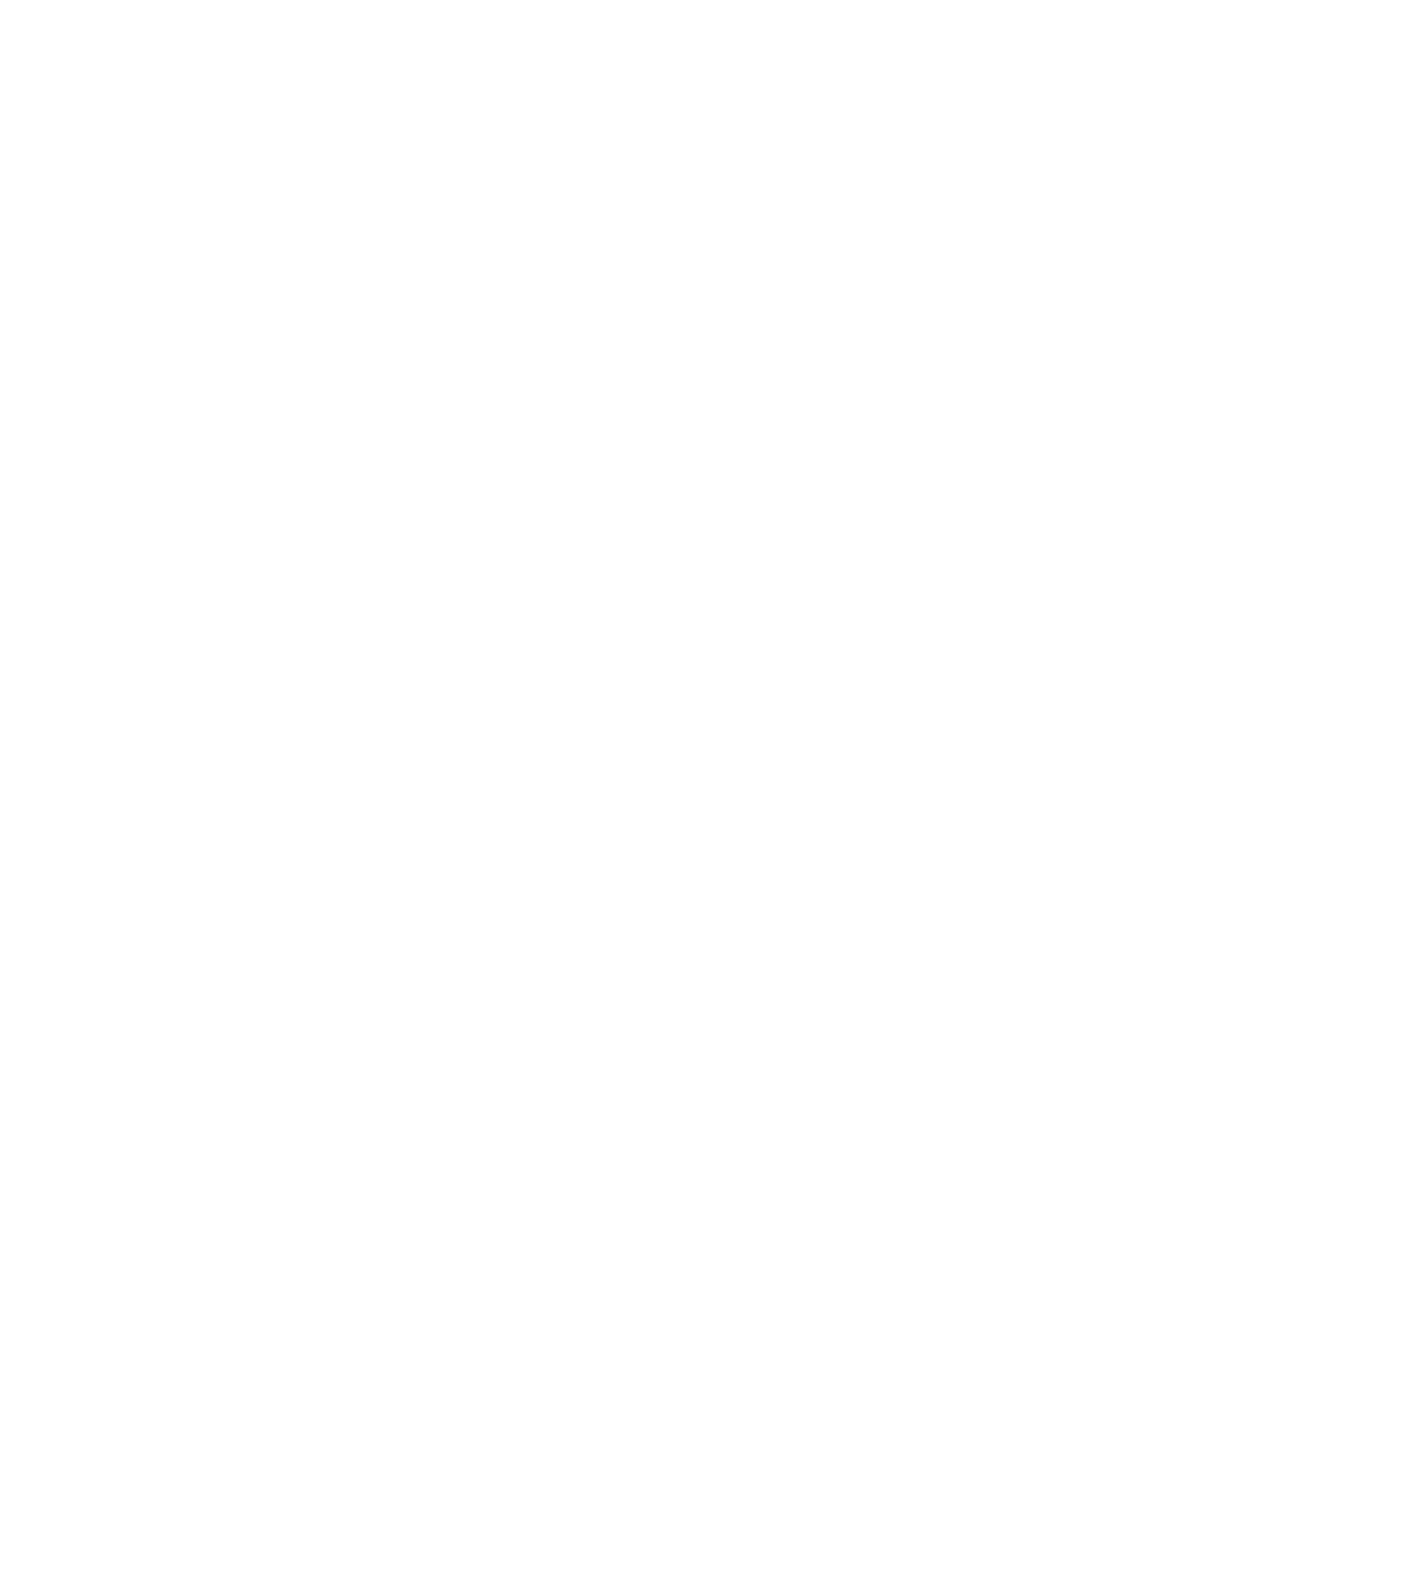 ADTRAN logo pour fonds sombres (PNG transparent)